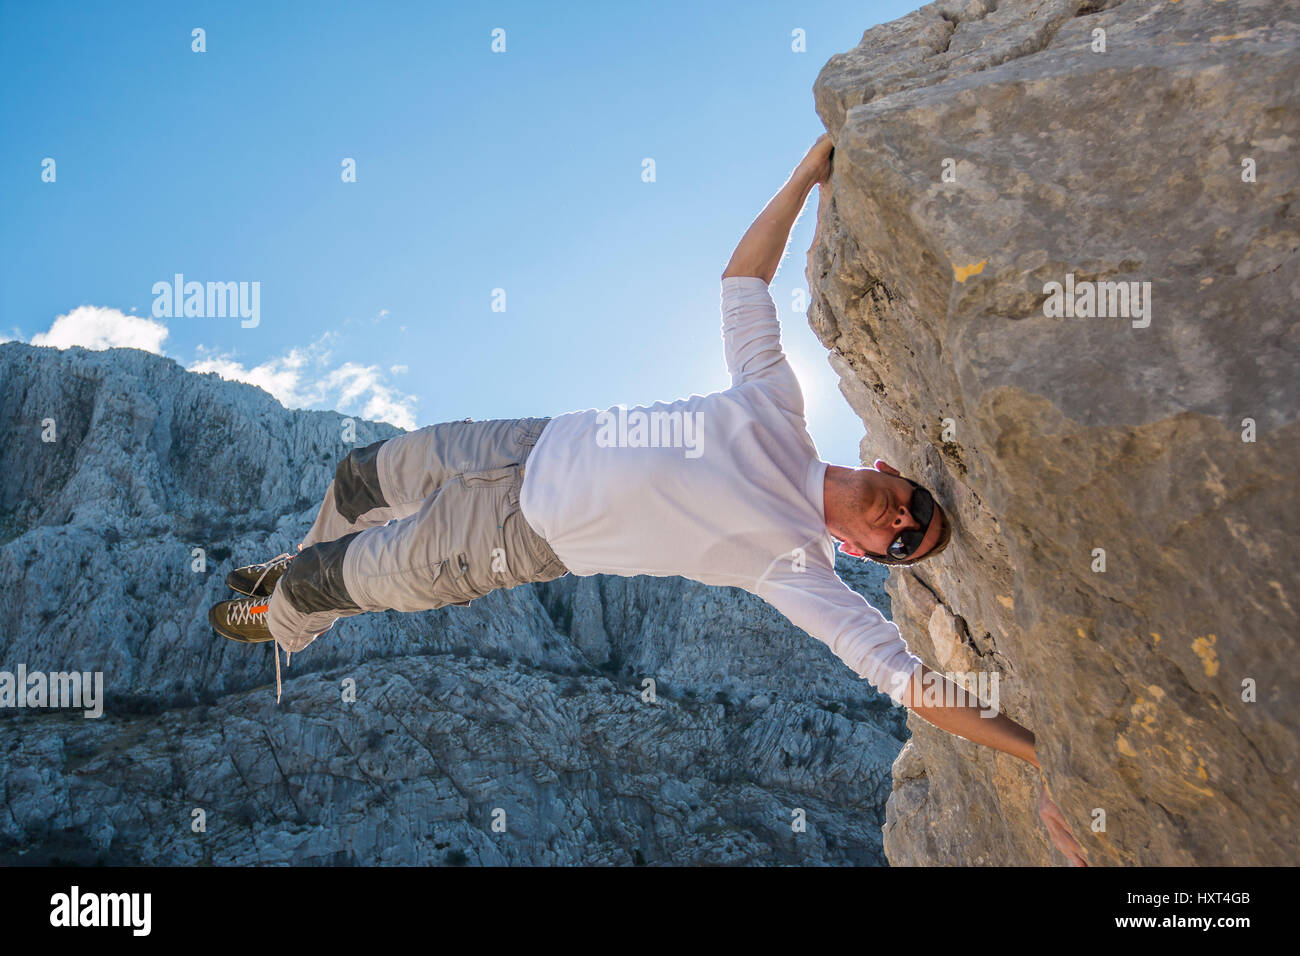 Young man climbing rock wall and hanging above gap. Roao, Villanueva del Rosario, Malaga Stock Photo